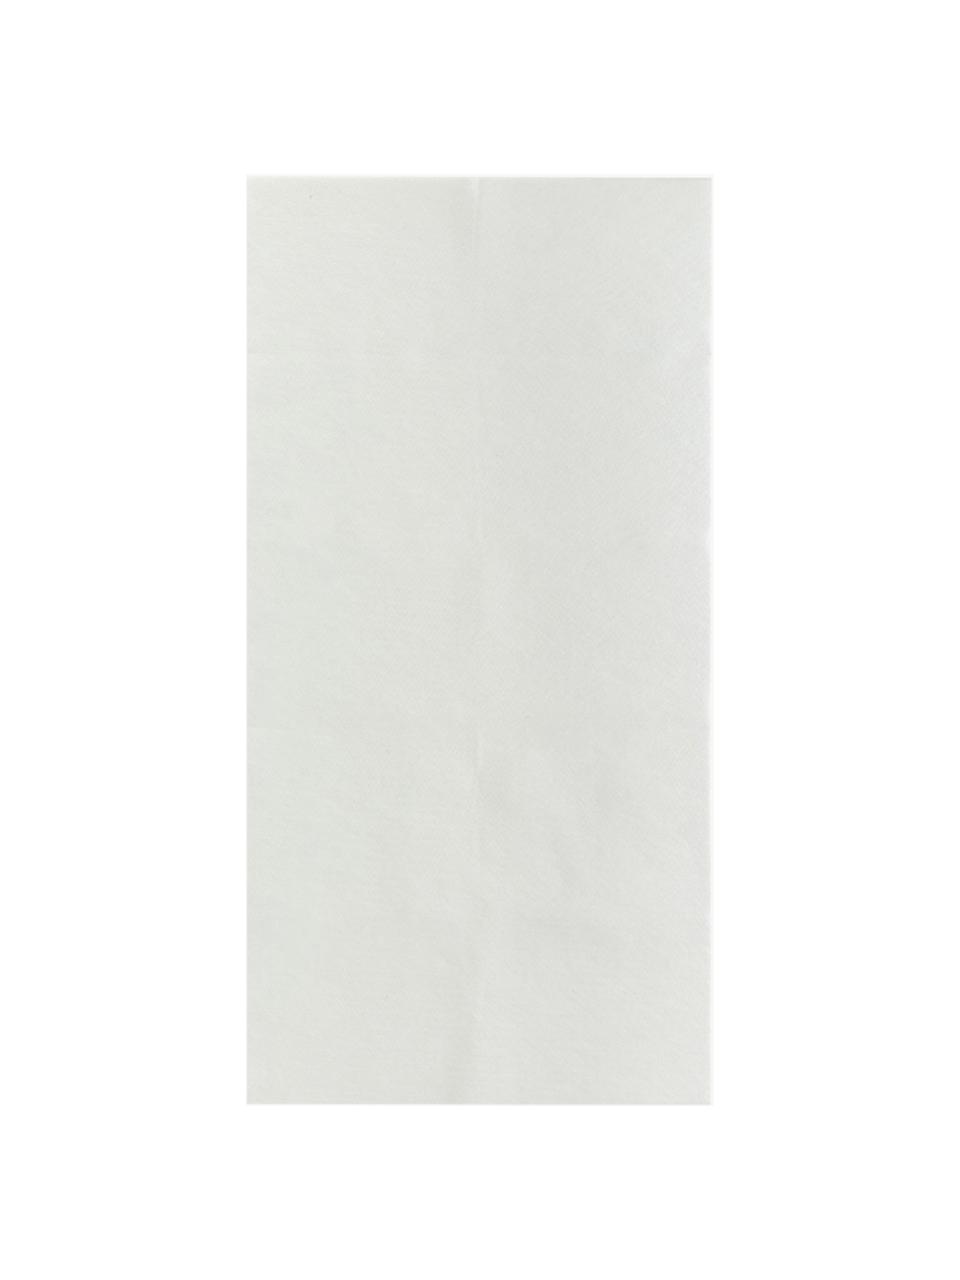 Vlies-Teppichunterlage My Slip Stop aus Polyestervlies, Polyestervlies mit Anti-Rutsch-Beschichtung, Weiß, B 150 x L 220 cm